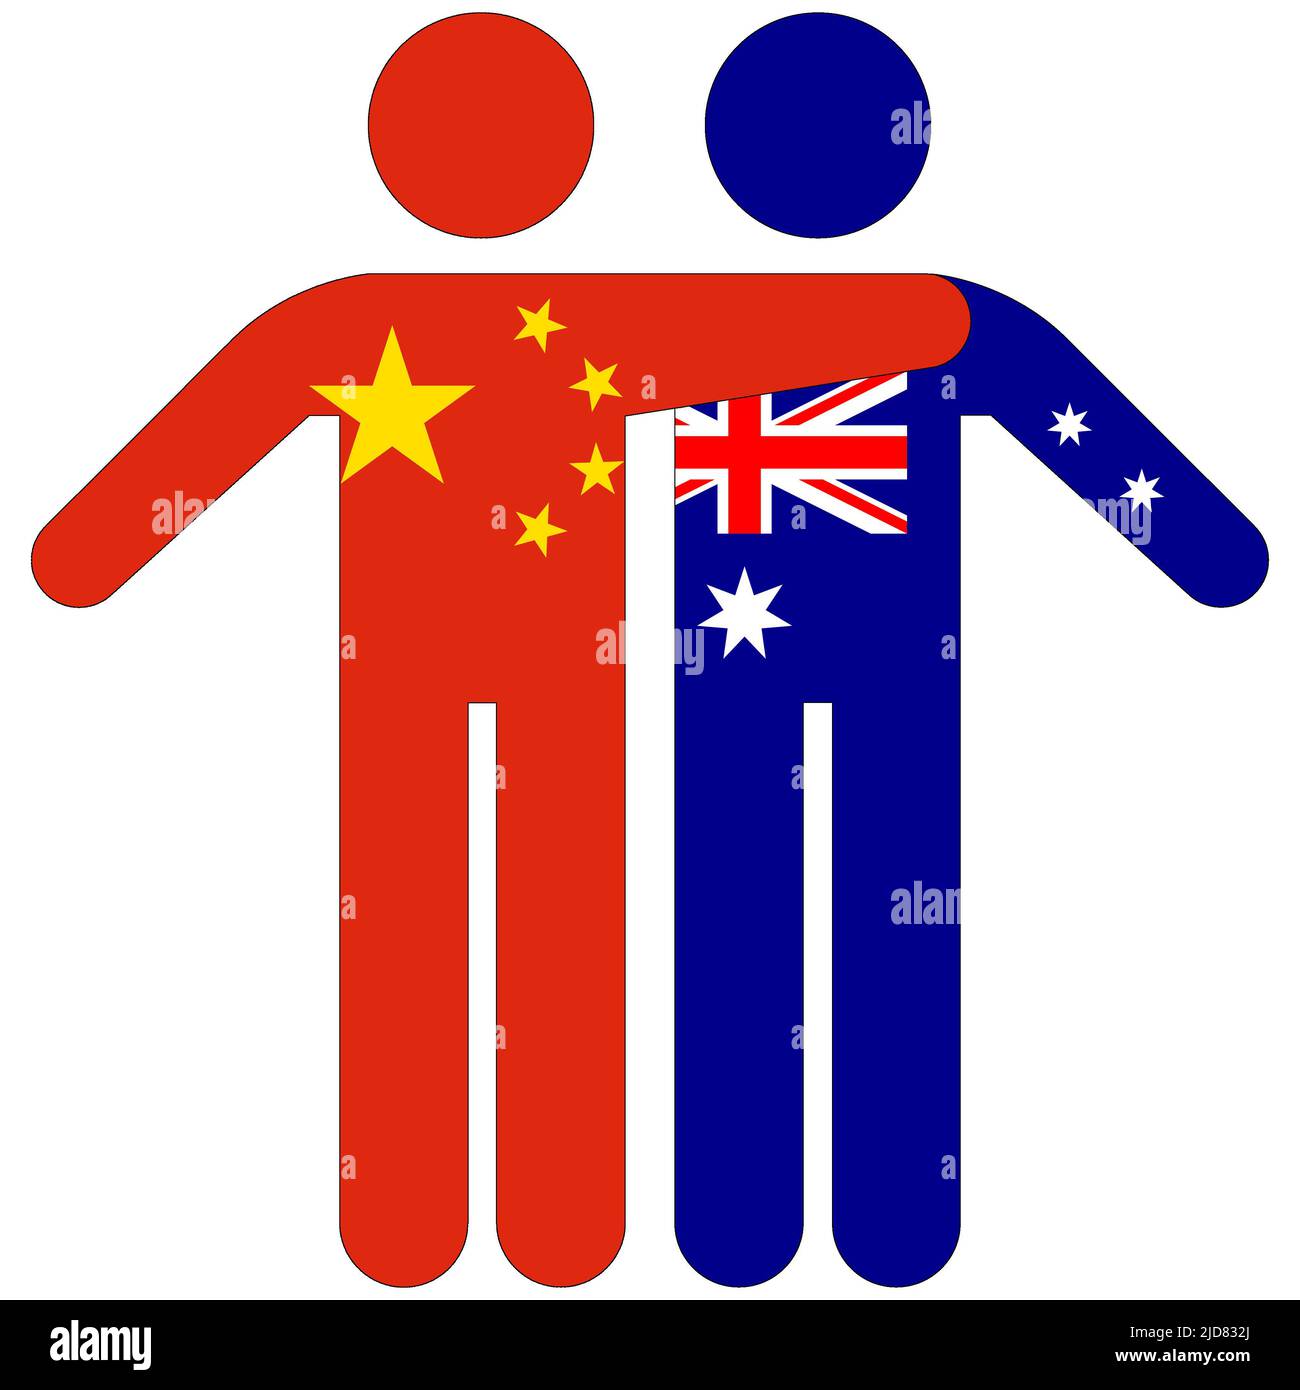 Chine - Australie : concept d'amitié sur fond blanc Banque D'Images